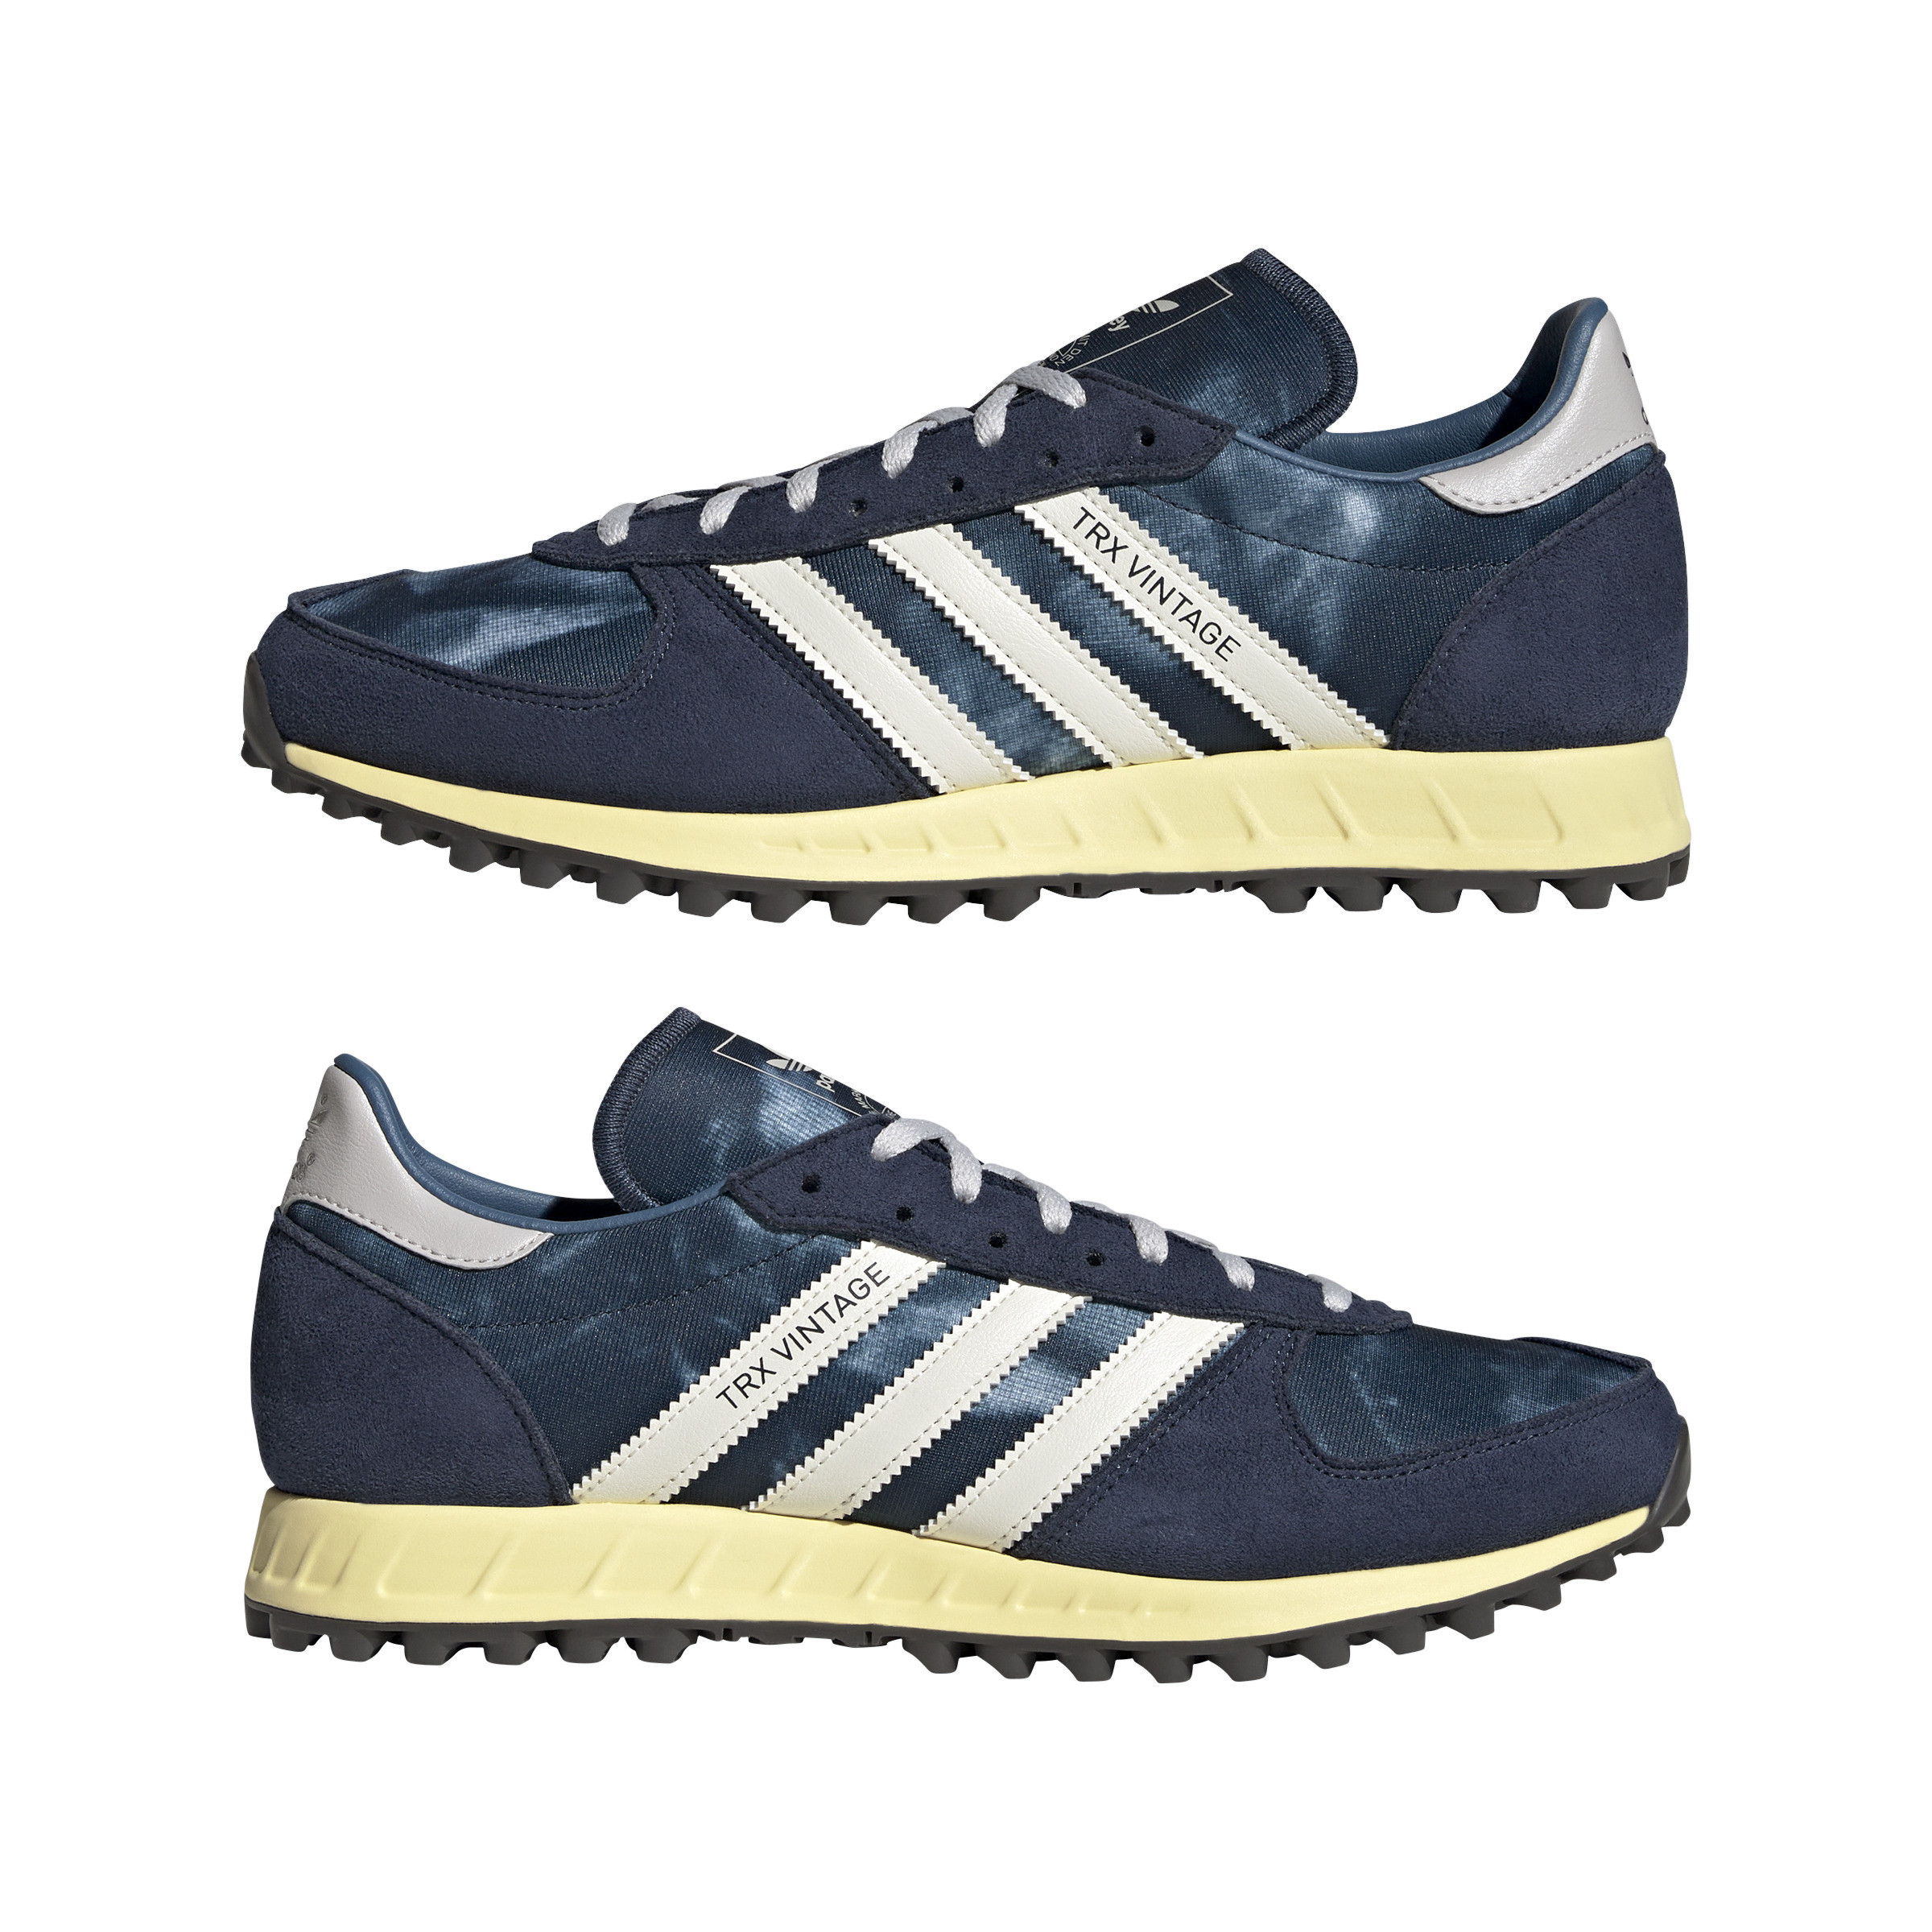 Adidas - Scarpe Adidas Trx Vintage, Blu, large image number 9